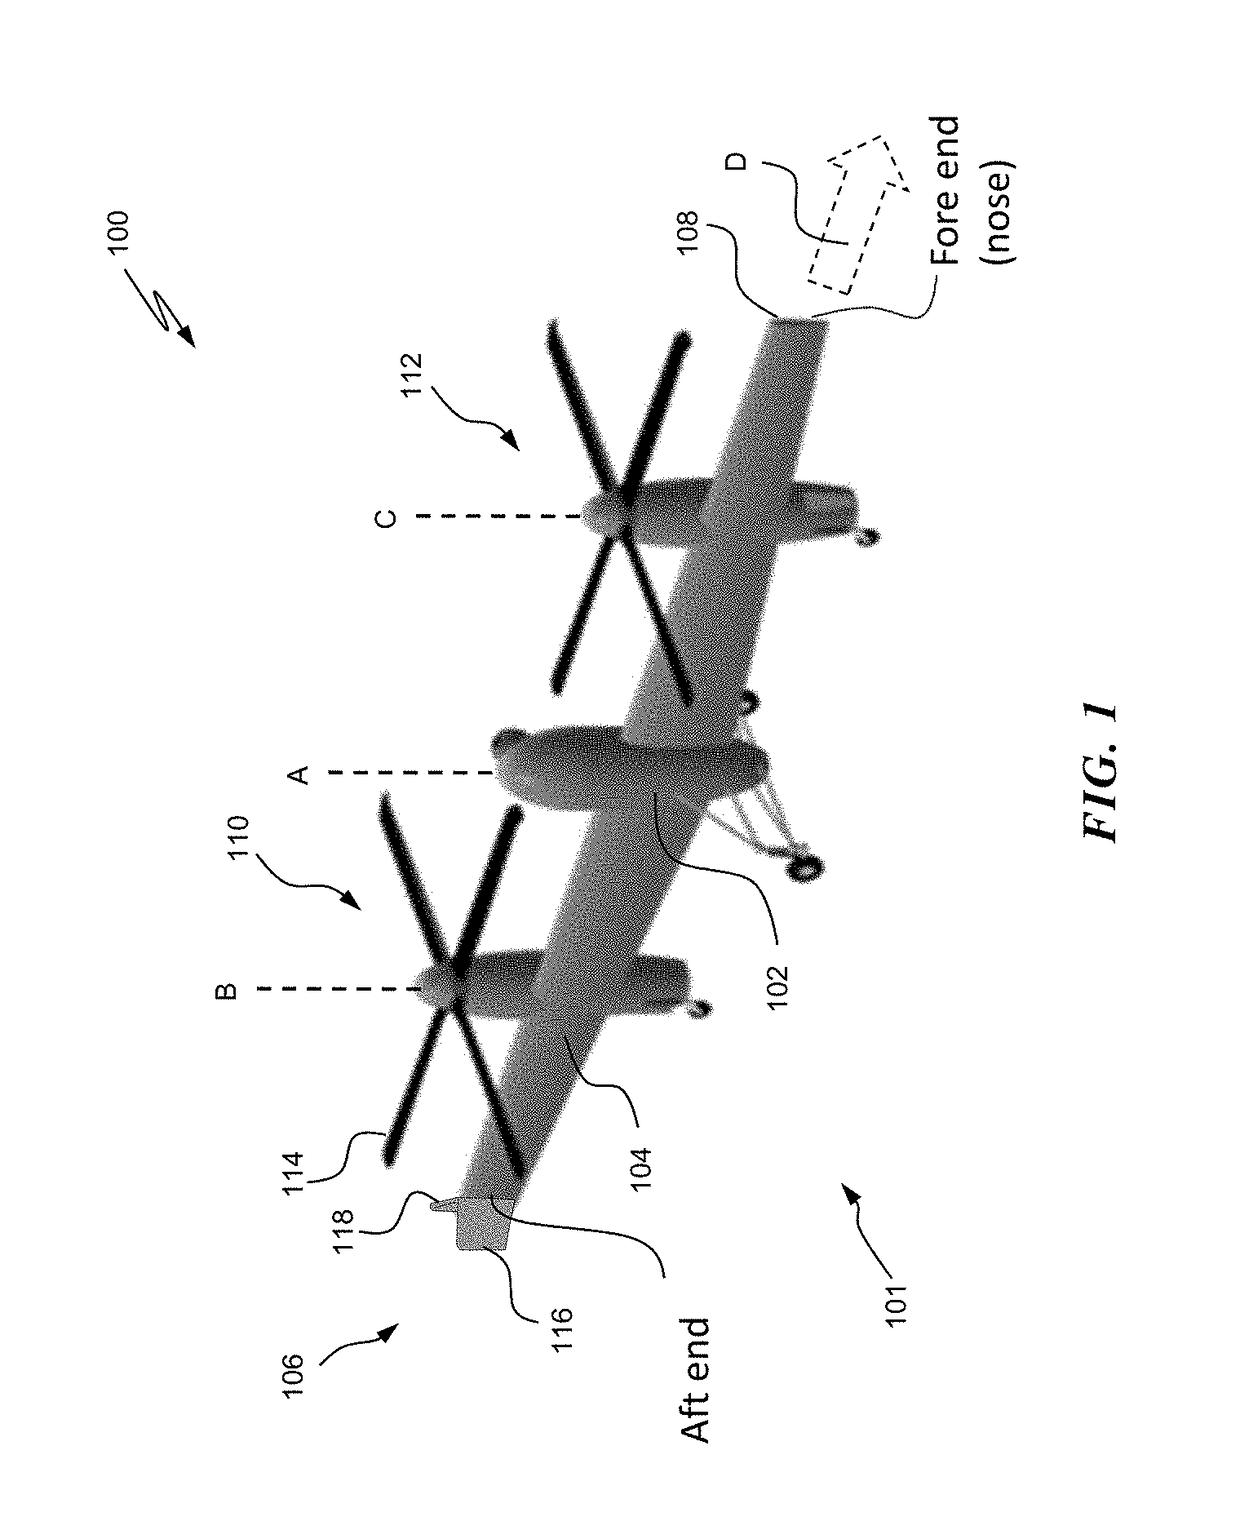 Vertical take-off and landing drag rudder